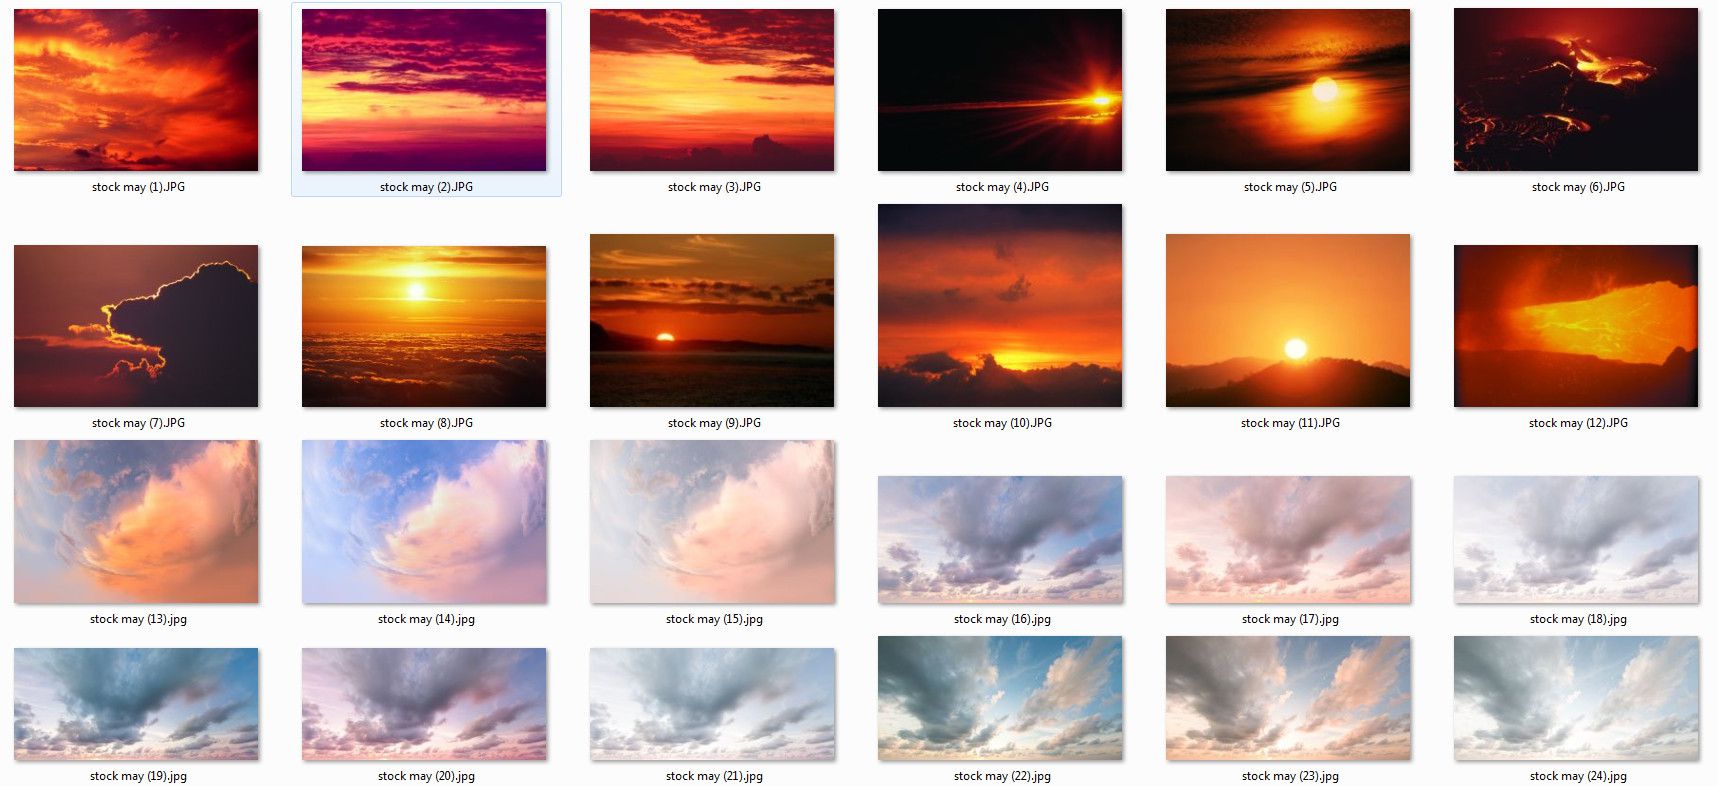 PSD stock mây: Hãy khám phá bộ ảnh PSD mây chất lượng cao với chủ đề đa dạng để tạo cho những thiết kế của bạn thêm sinh động và đẹp mắt hơn.